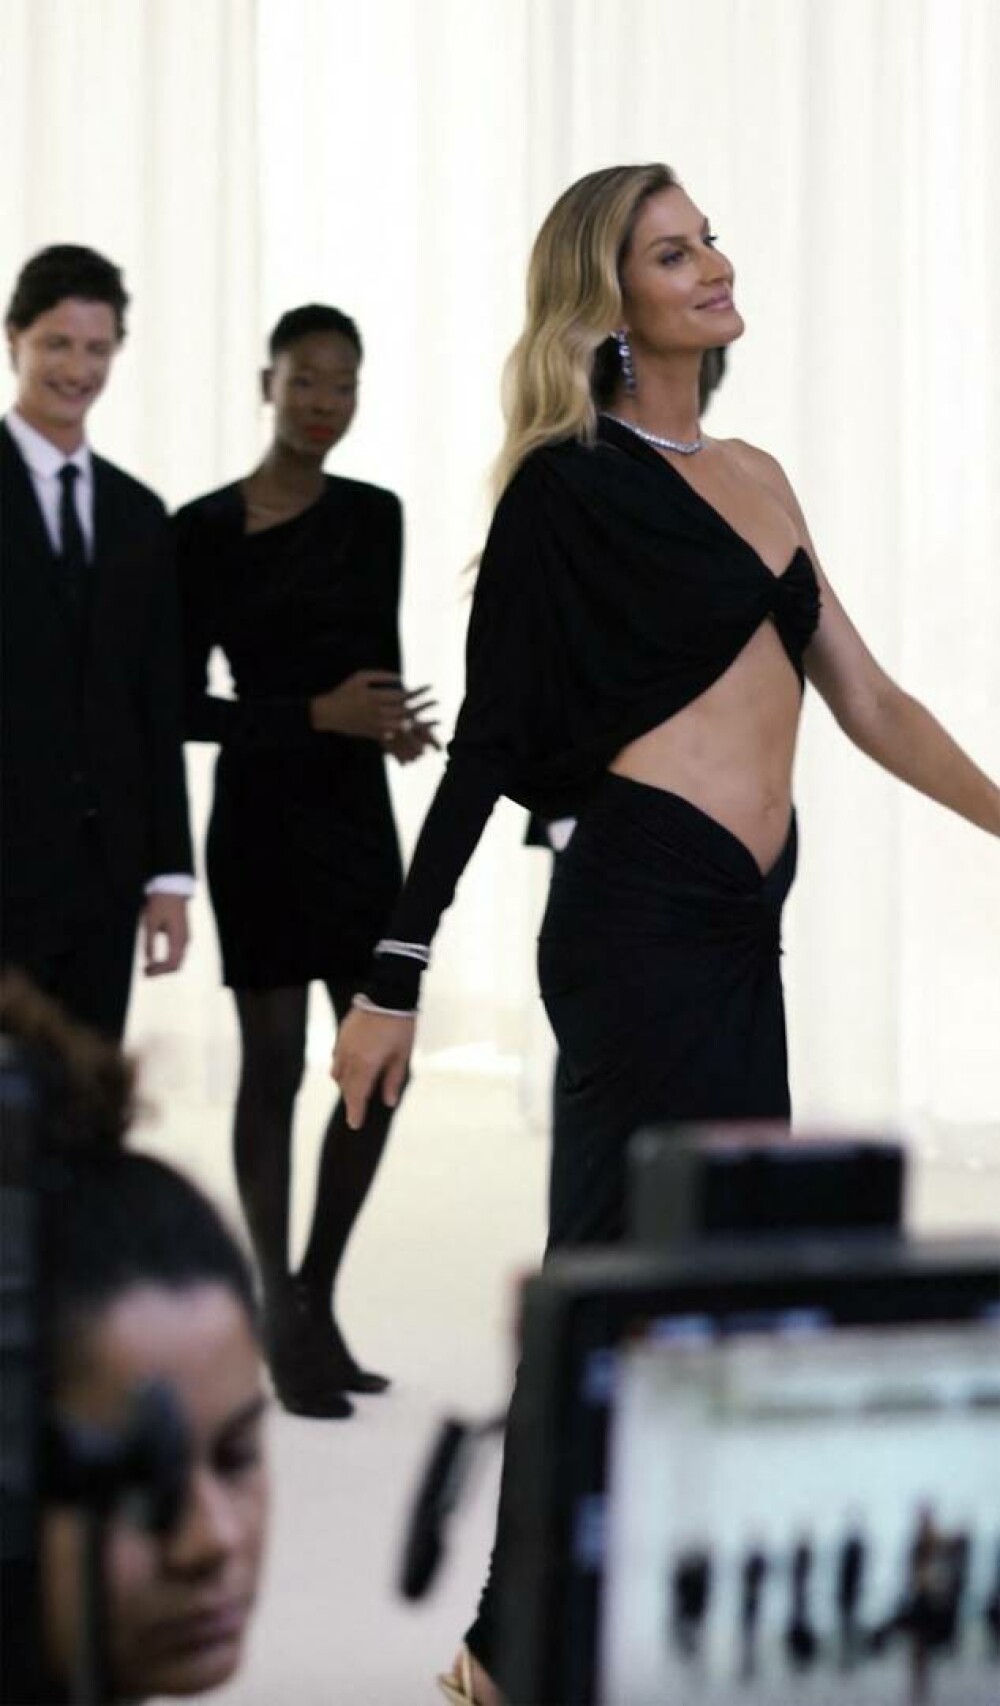 Gisele Bündchen impresionează într-o rochie neagră. Supermodelul a făcut furori cu ultima sa apariție | FOTO - Imaginea 27